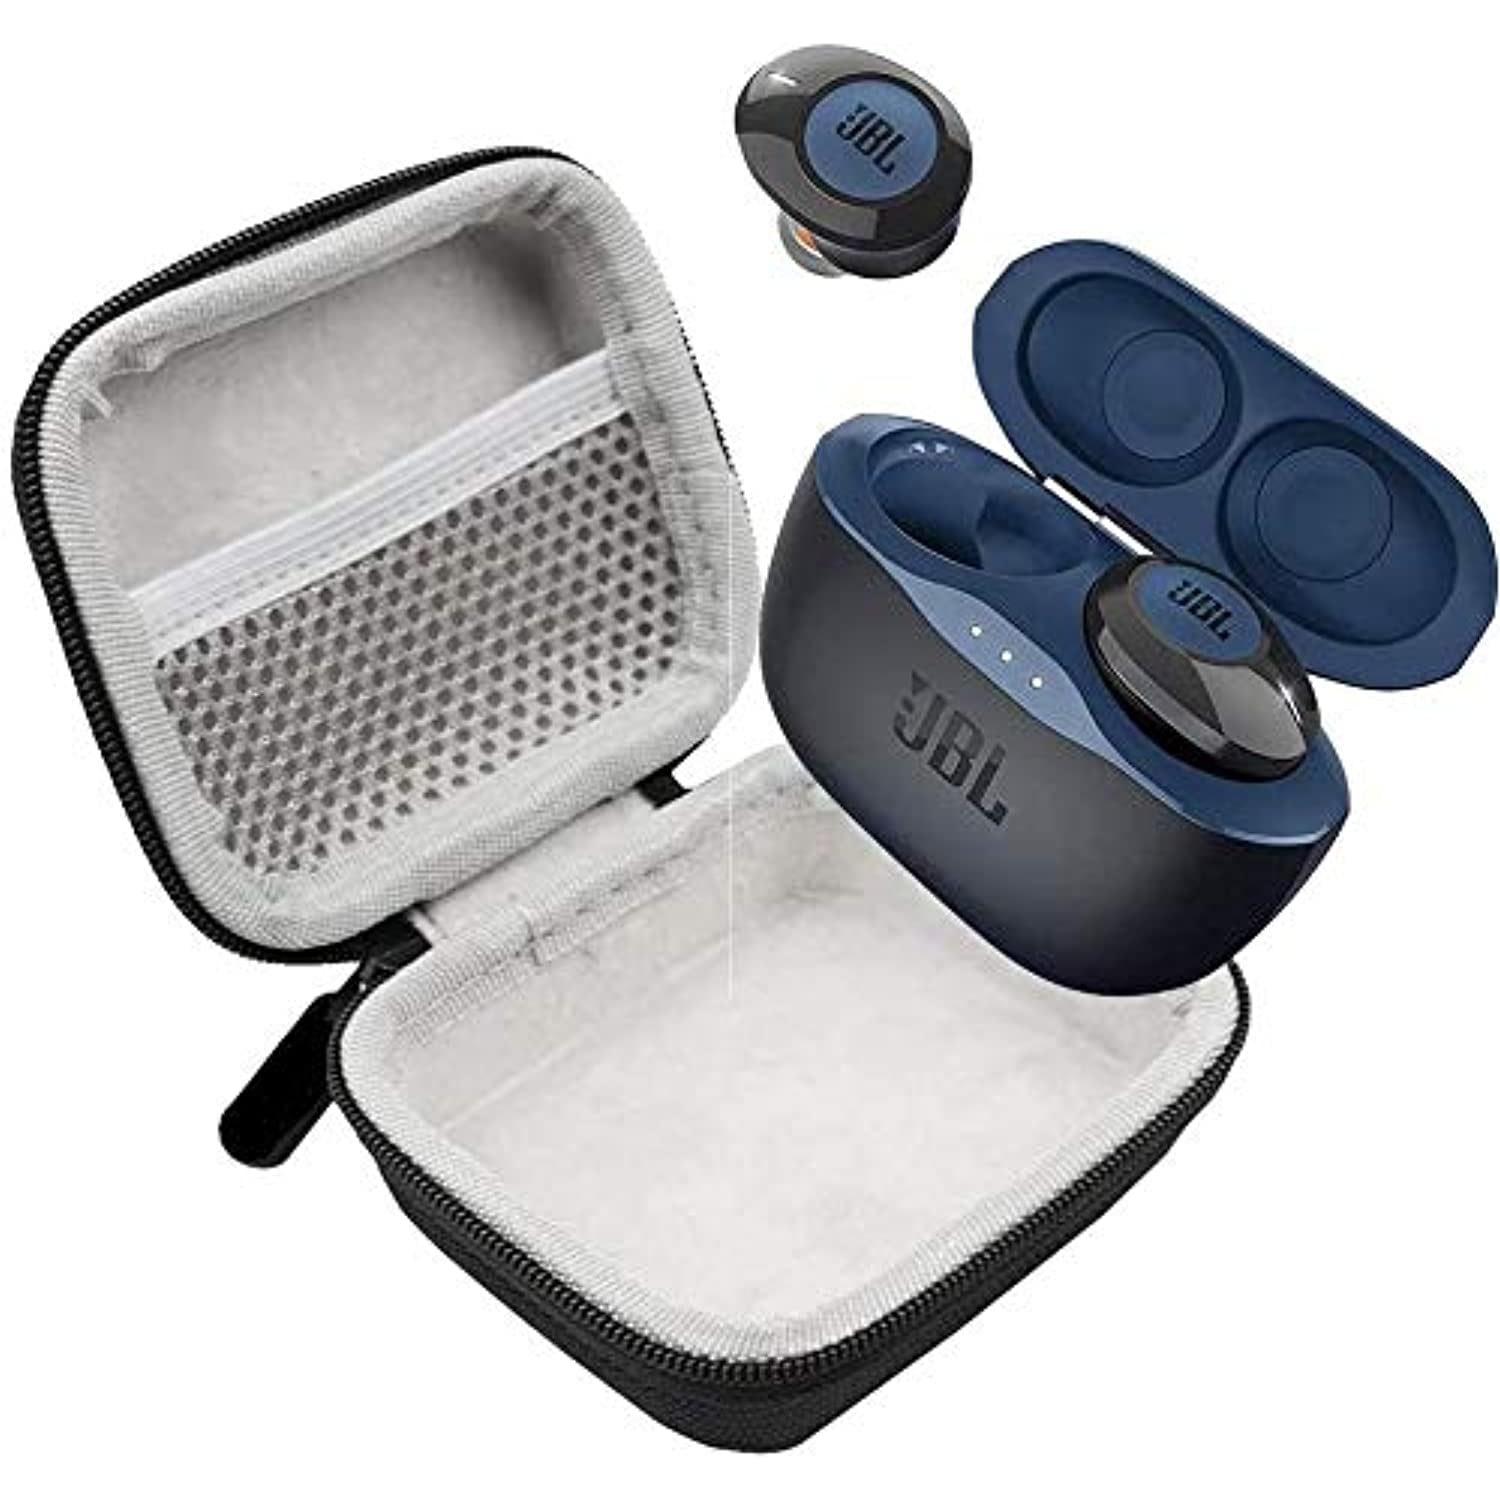 Anklage Af storm leder JBL Tune 120 Wireless Earbud Headphones with JBL Charging Case and  Hardshell Case Bundle (Blue, Tune 120) - Walmart.com